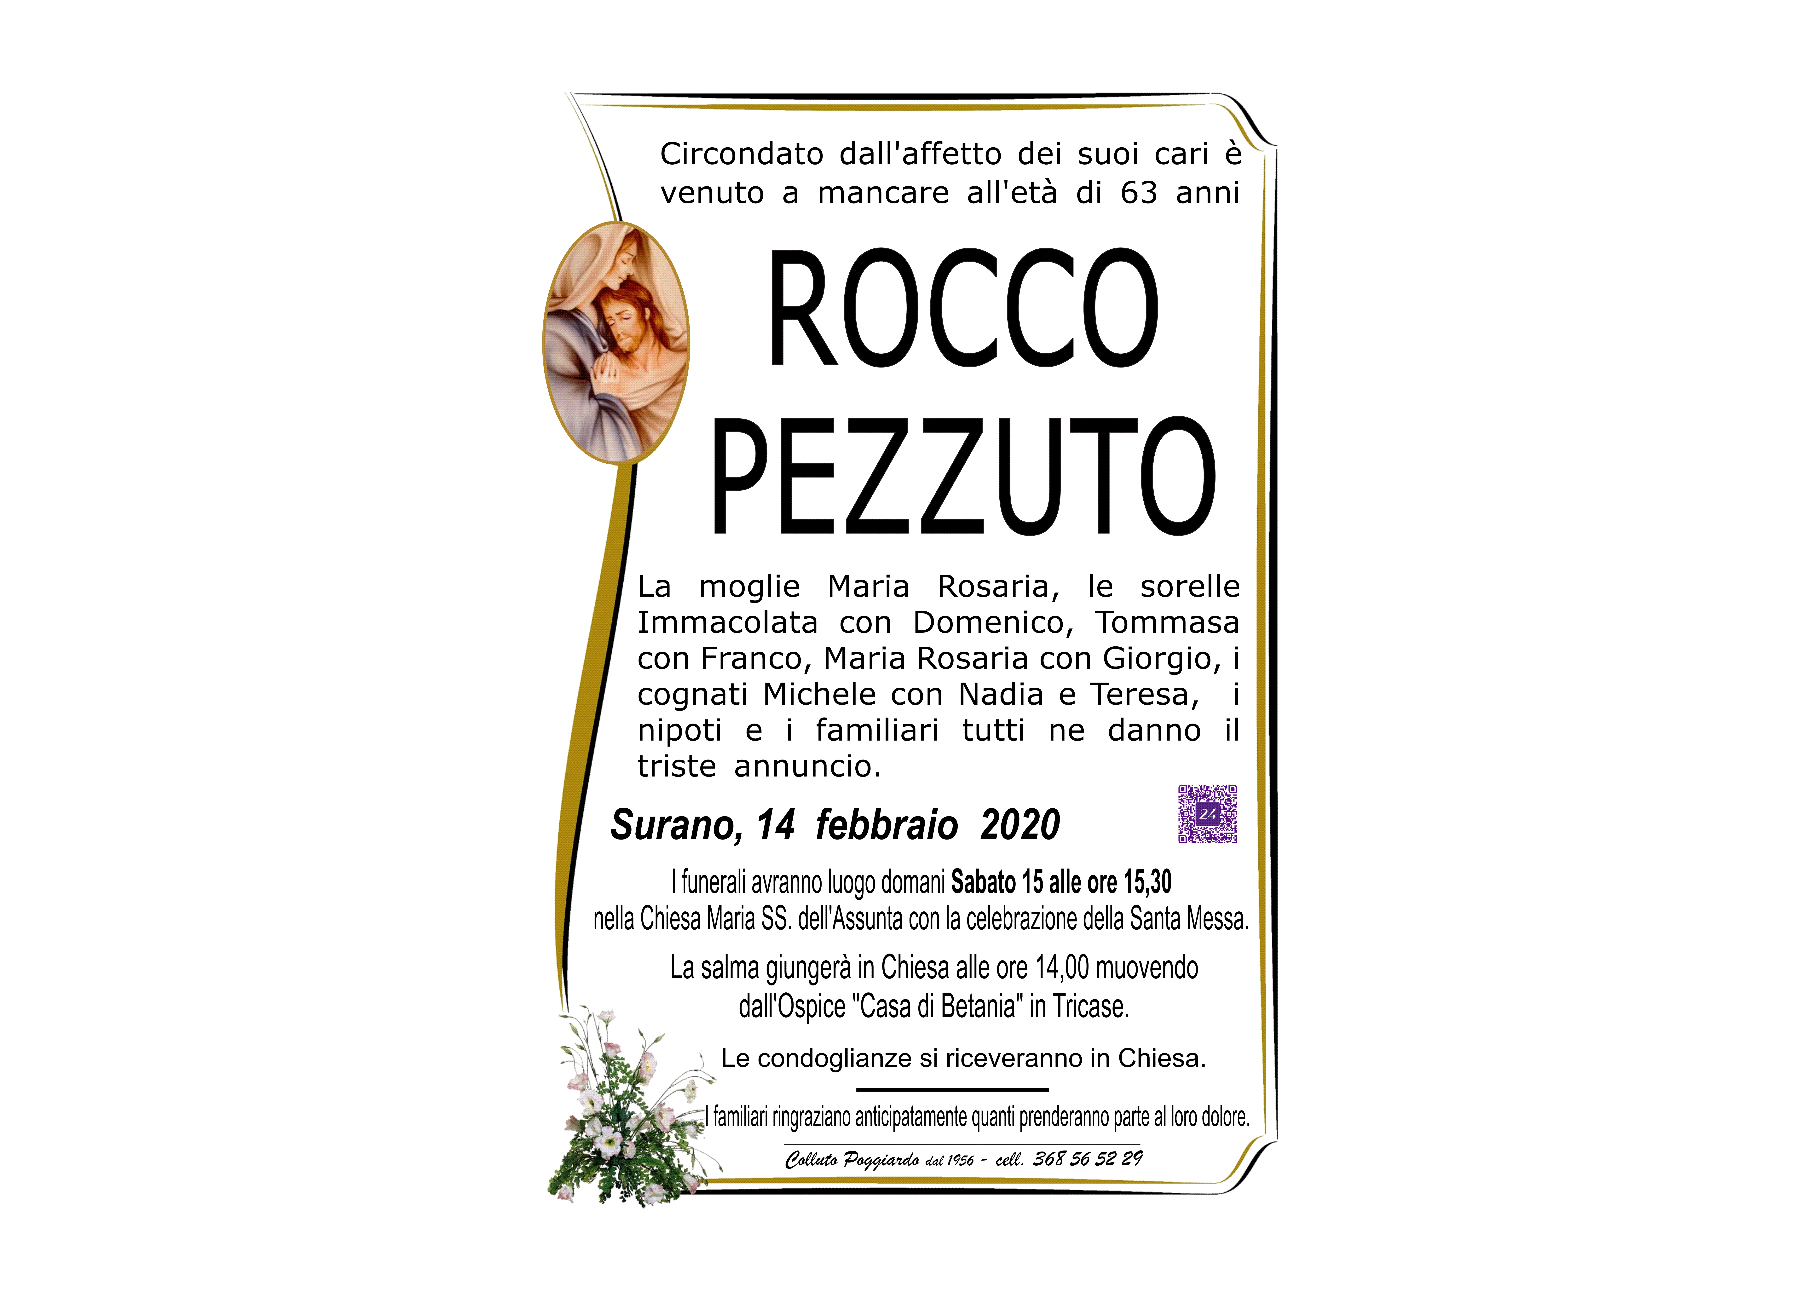 Rocco Salvatore Pezzuto